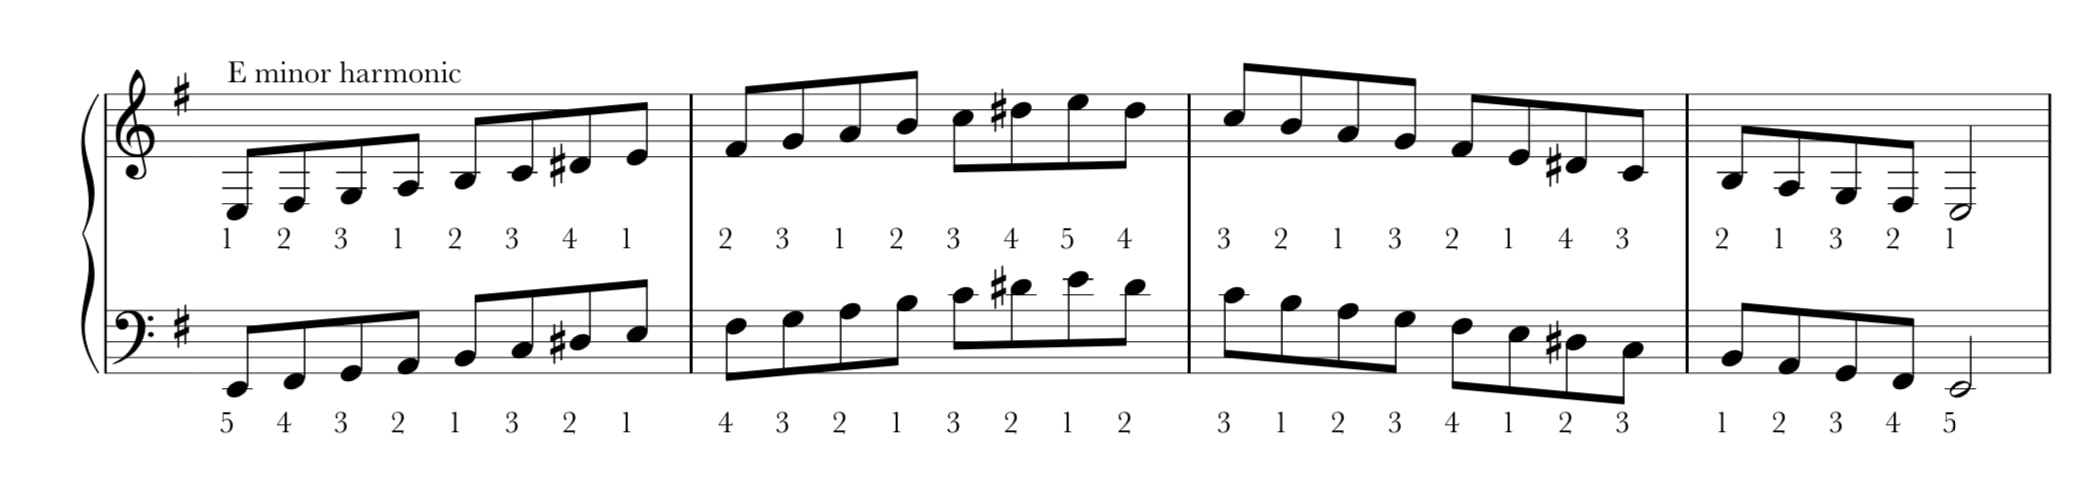 E Harmonic Minor Scale Piano